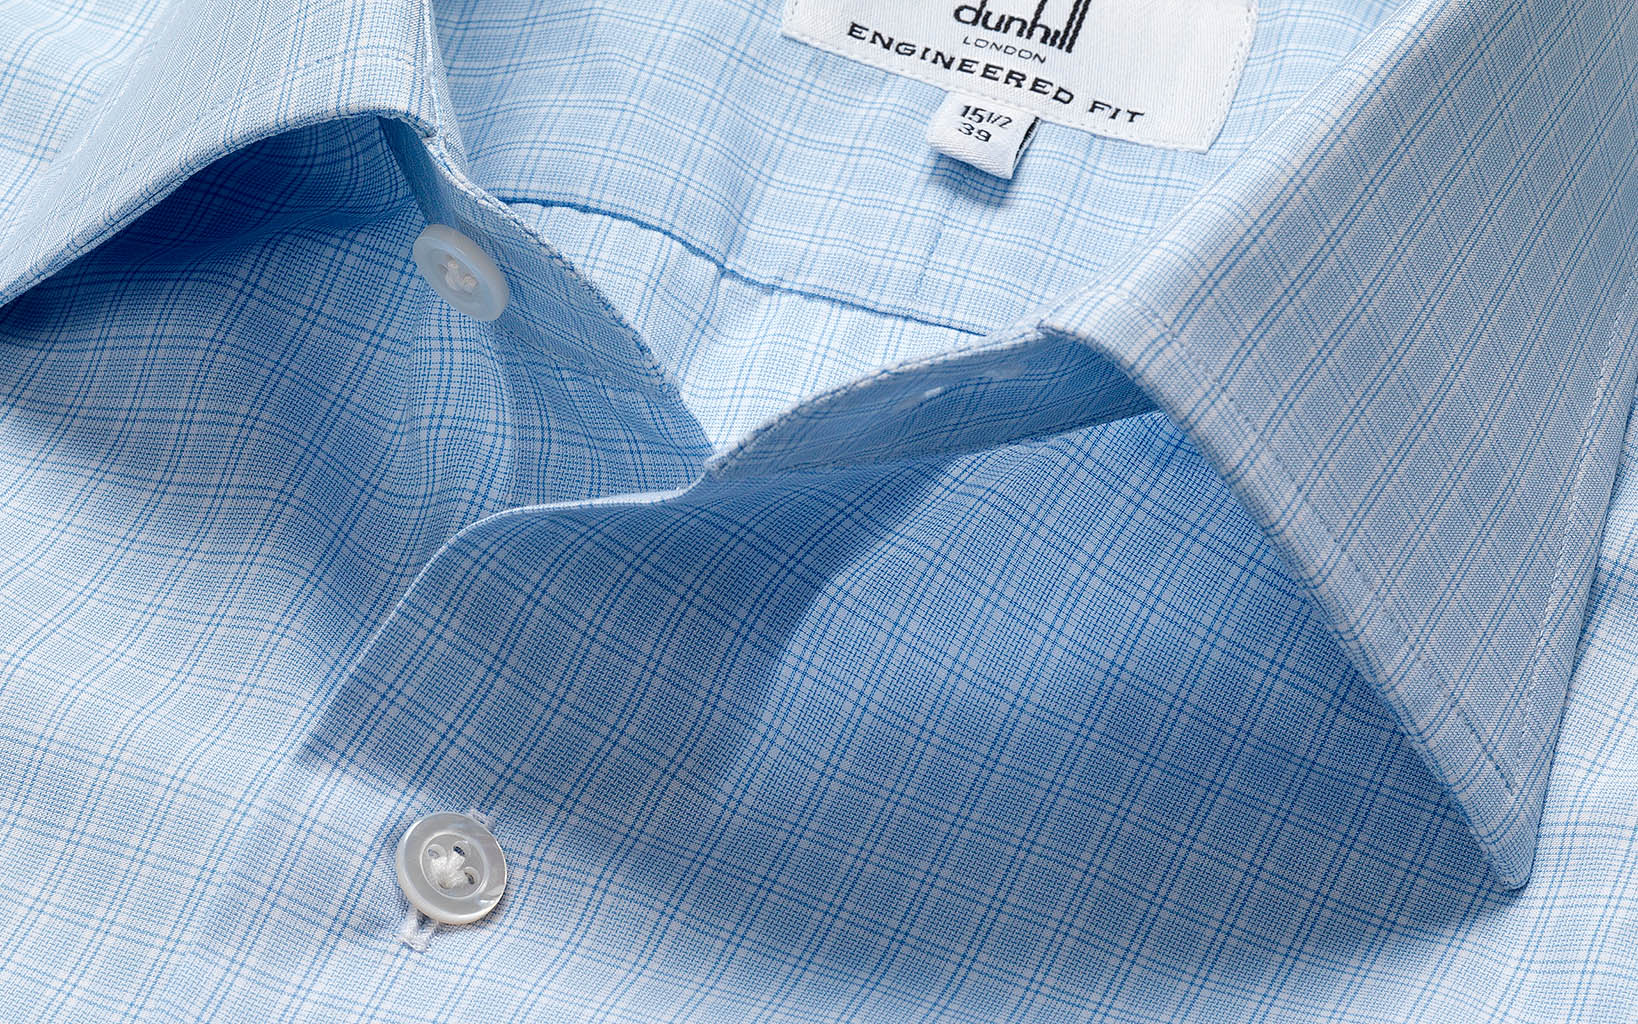 Packshot Factory - Mens fashion - Alfred Dunhill shirt close up